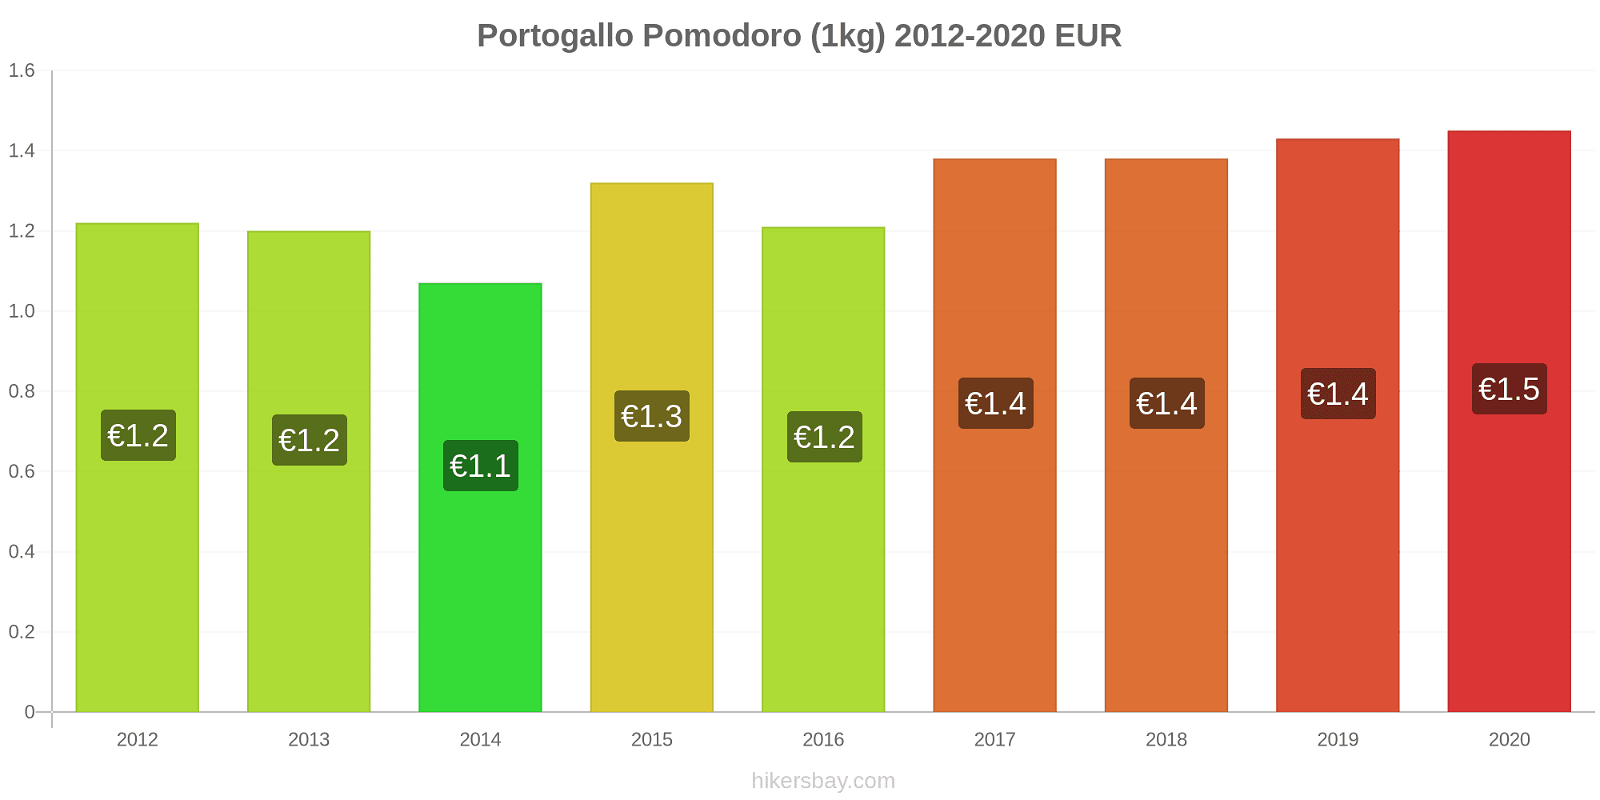 Portogallo variazioni di prezzo Pomodoro (1kg) hikersbay.com